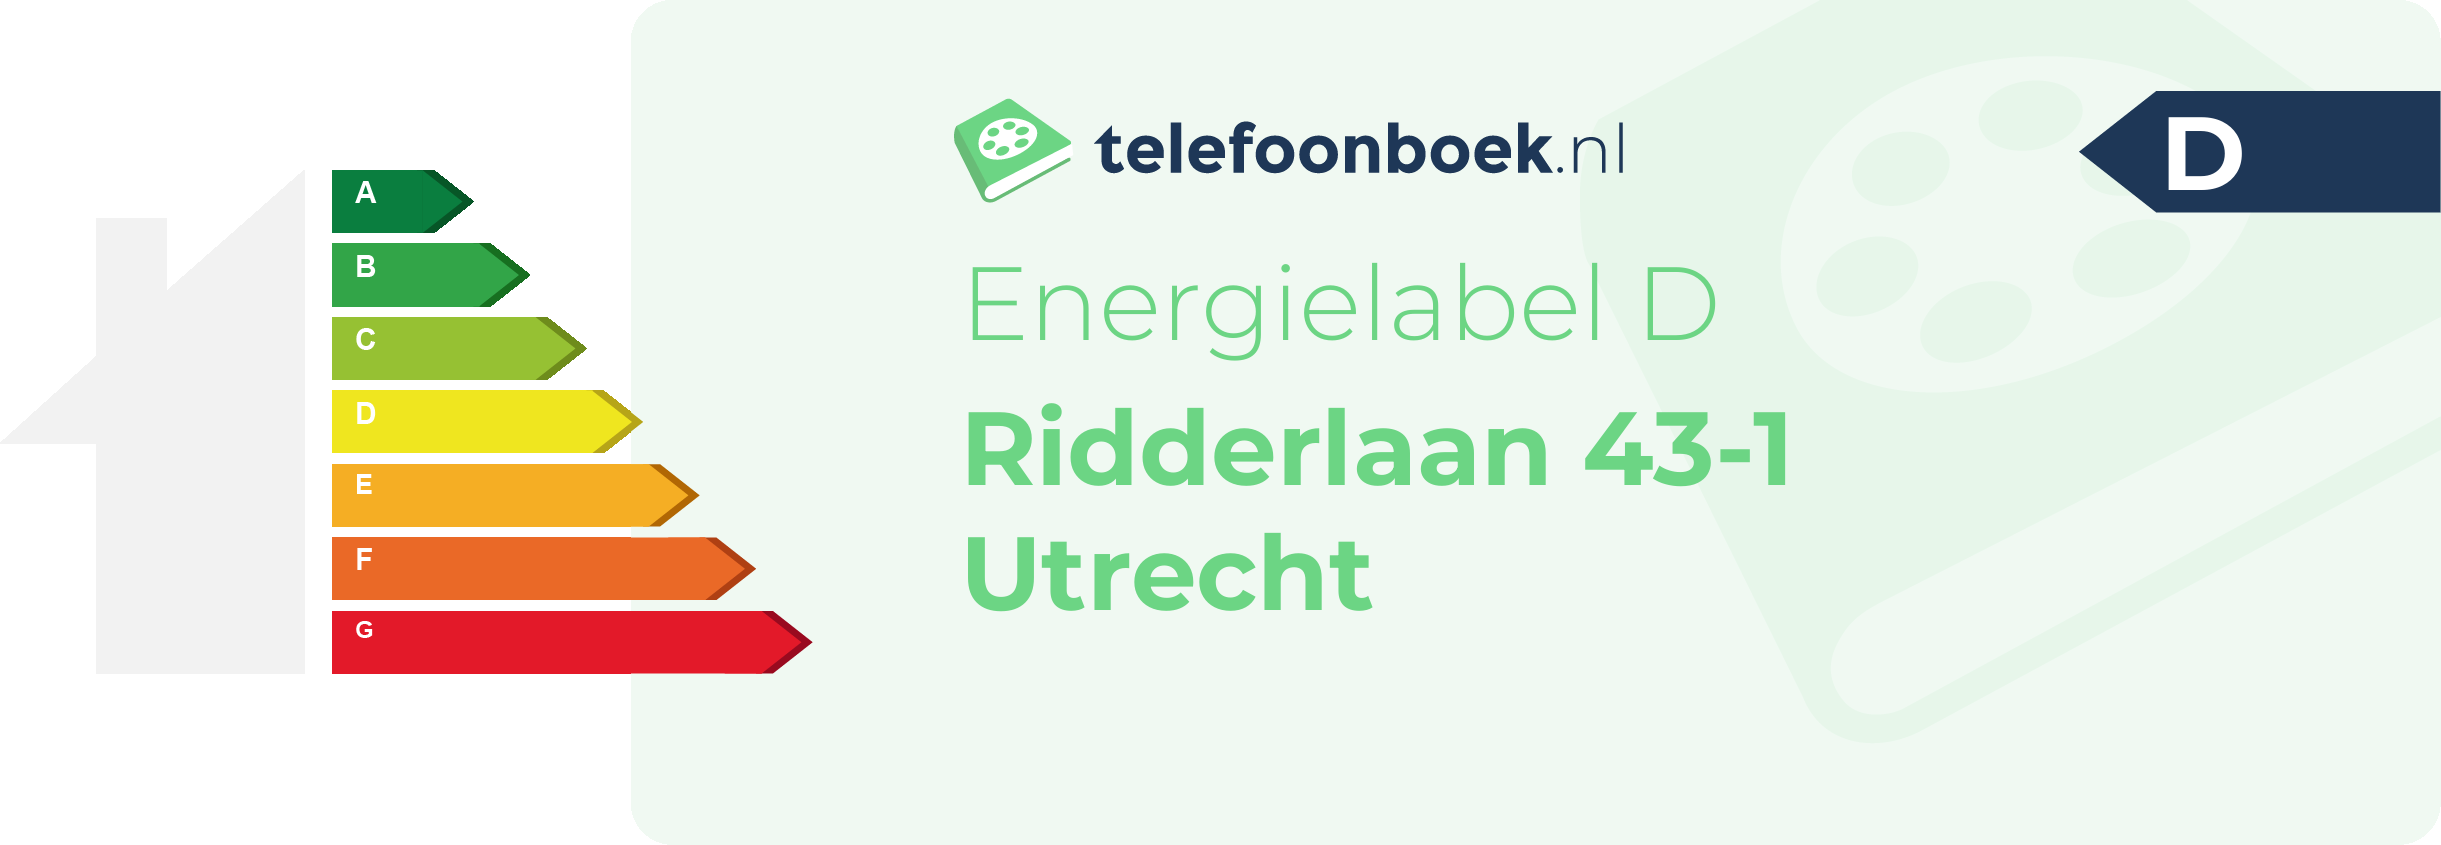 Energielabel Ridderlaan 43-1 Utrecht